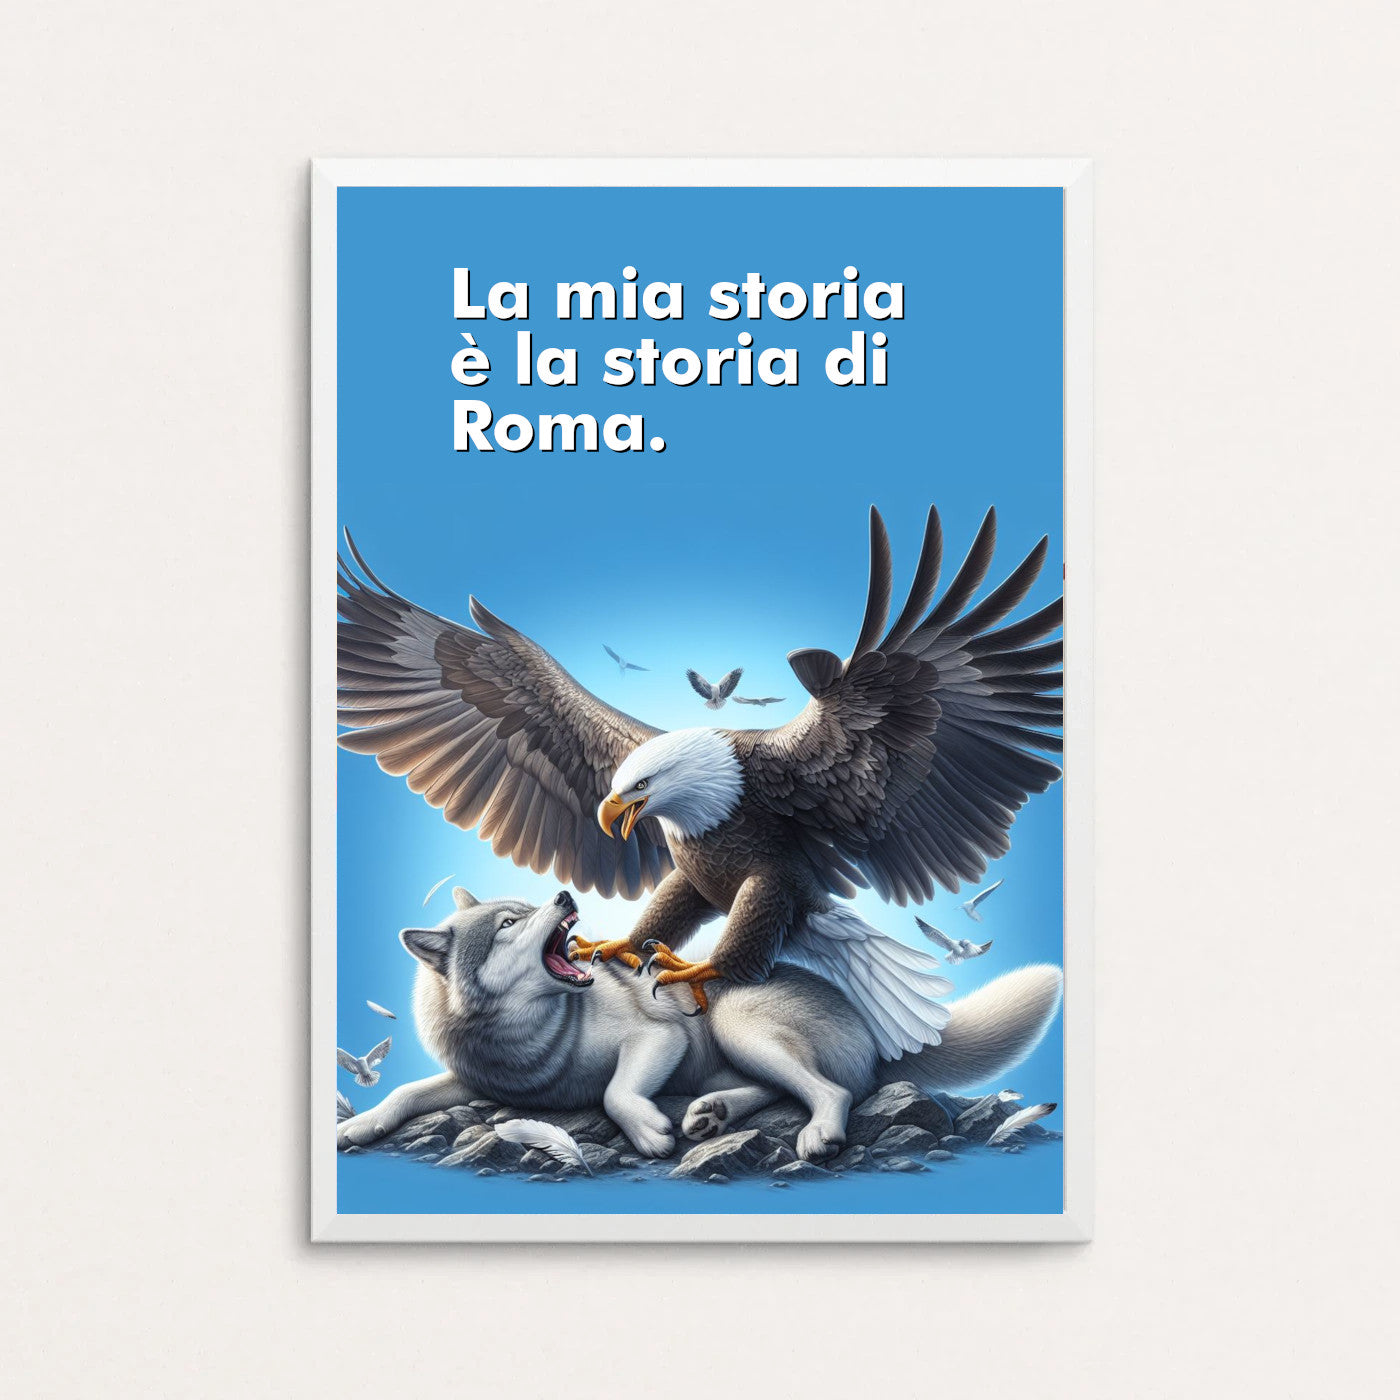 La mia storia è la storia di Roma